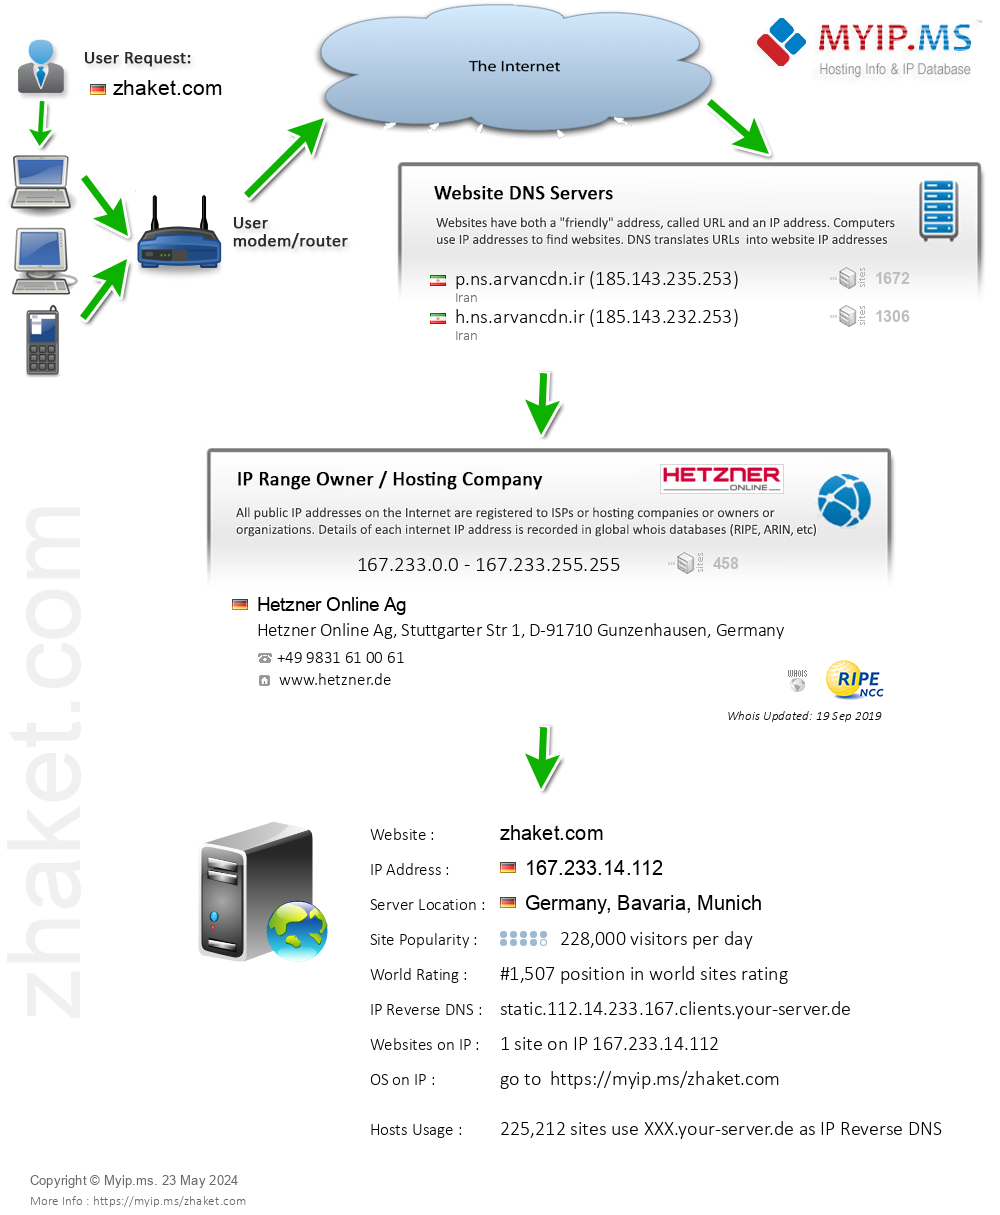 Zhaket.com - Website Hosting Visual IP Diagram